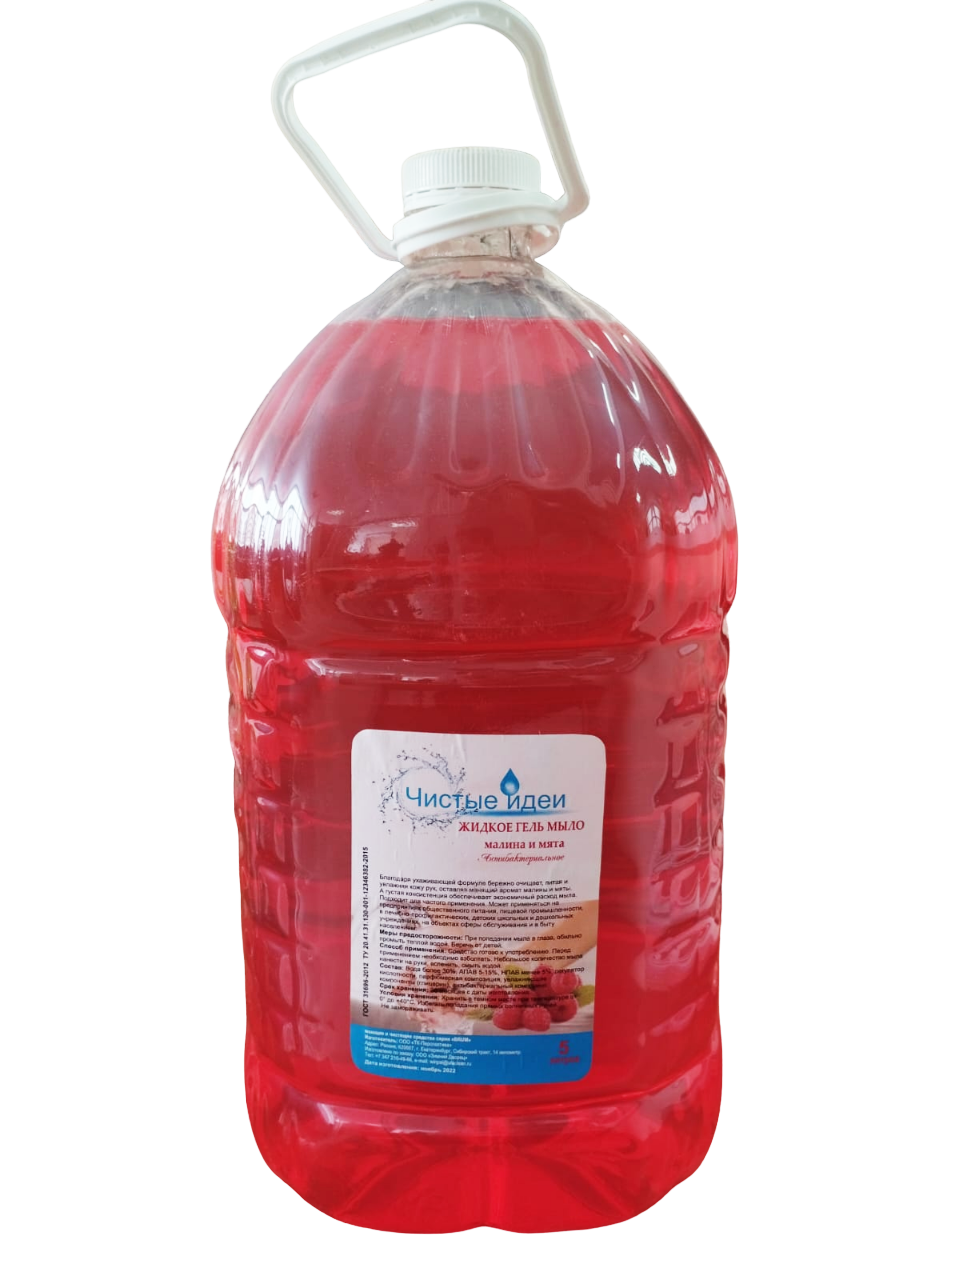 Мыло-гель жидкое Чистые Идеи Малина и Мята, красное 5 литров ПЭТ